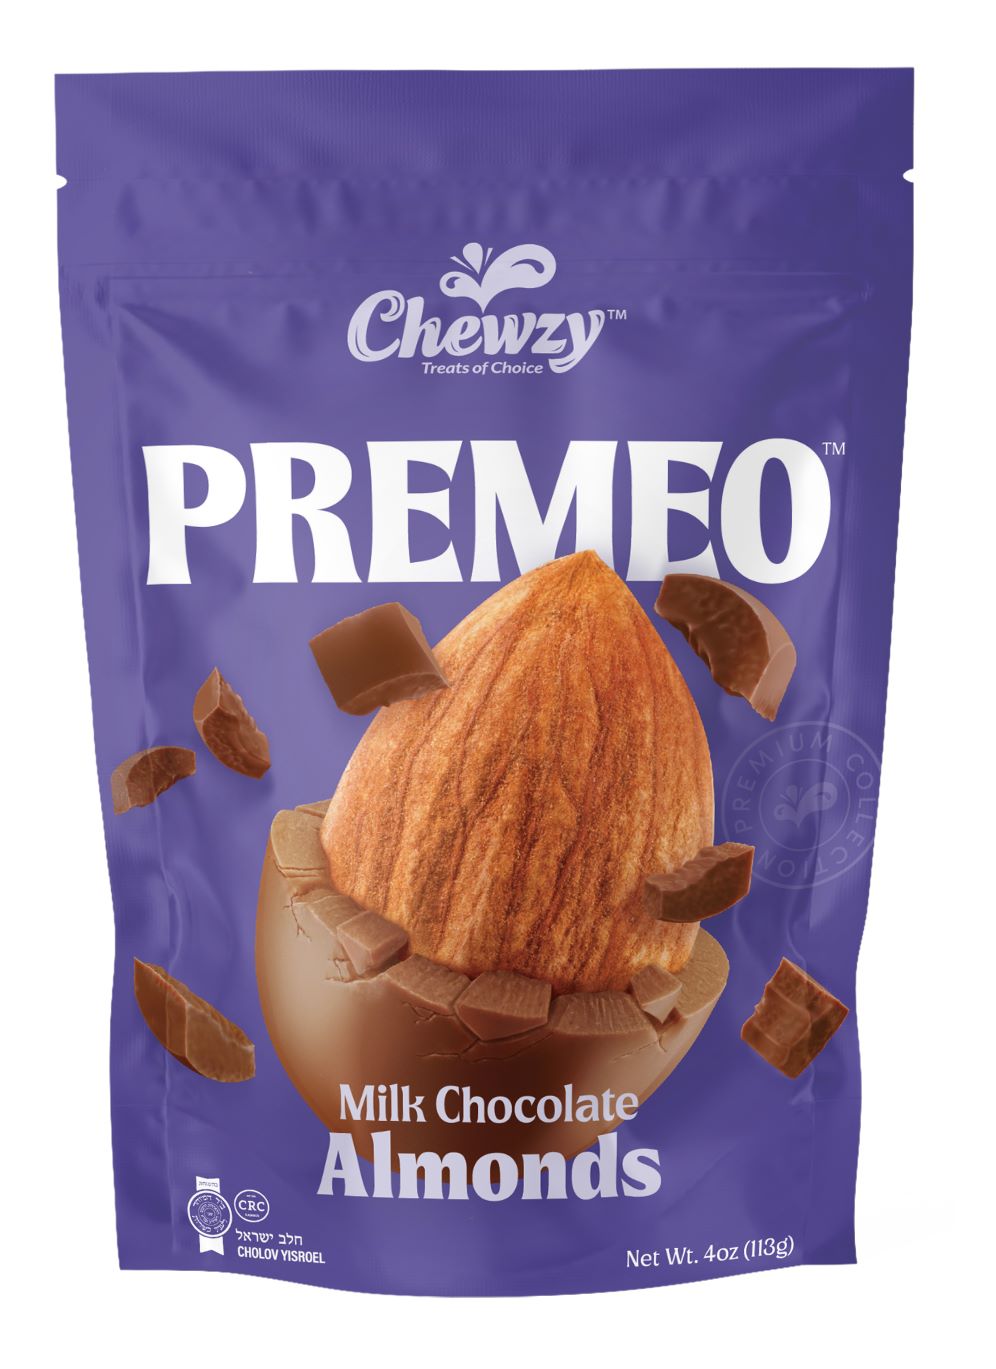 CHEWZY PREMEO MILK CHOCOLATE ALMONDS